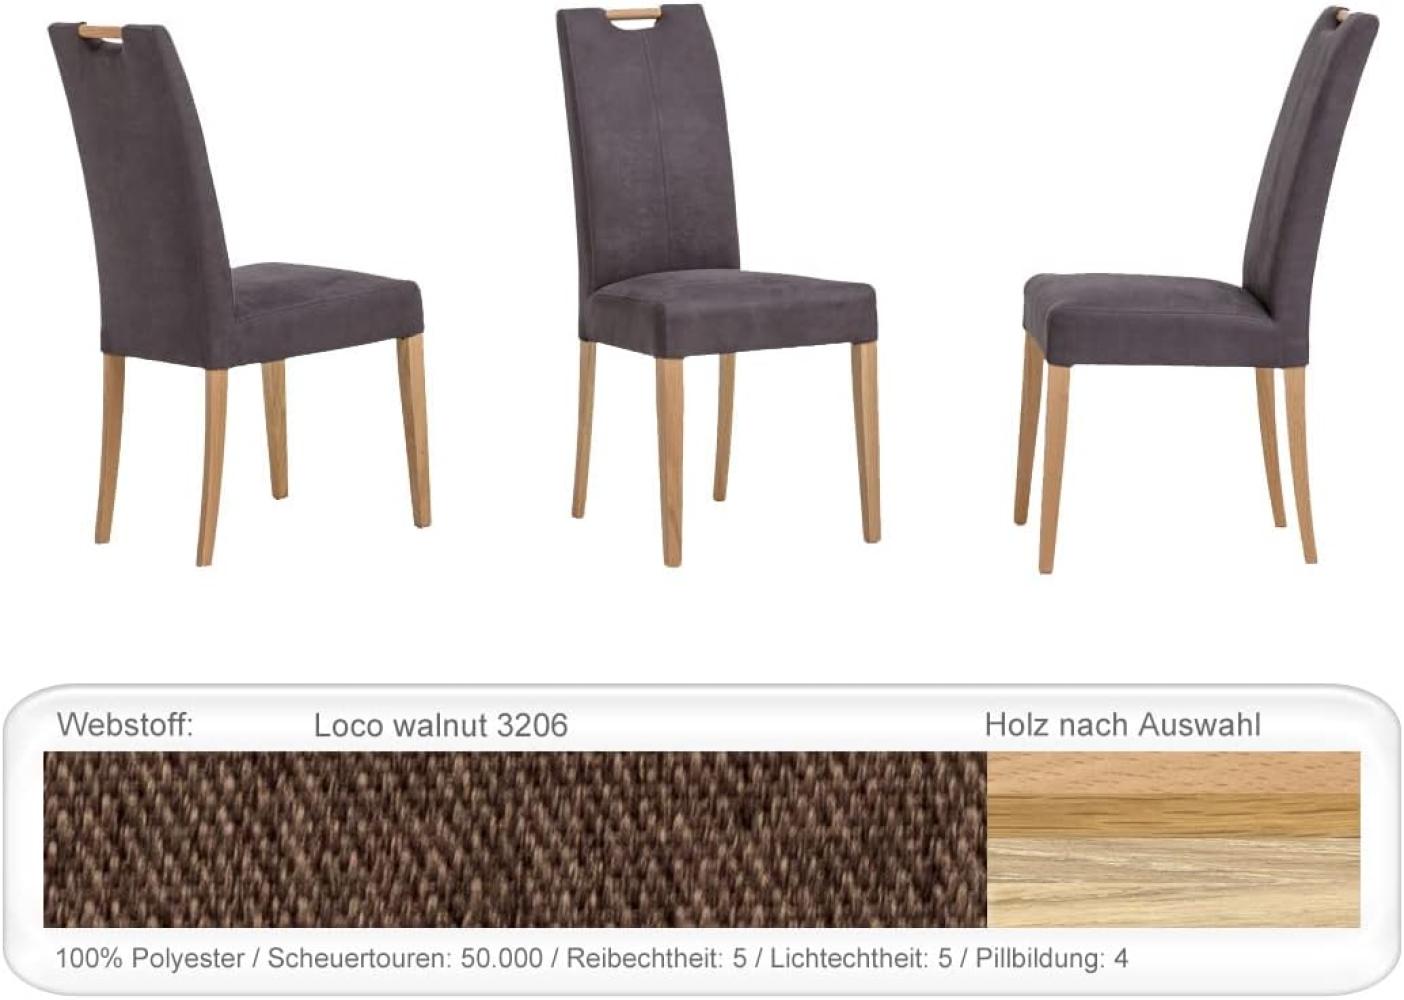 6x Stuhl Silvana Varianten Polsterstuhl Esszimmerstuhl Massivholzstuhl Eiche natur lackiert, Loco walnut Bild 1